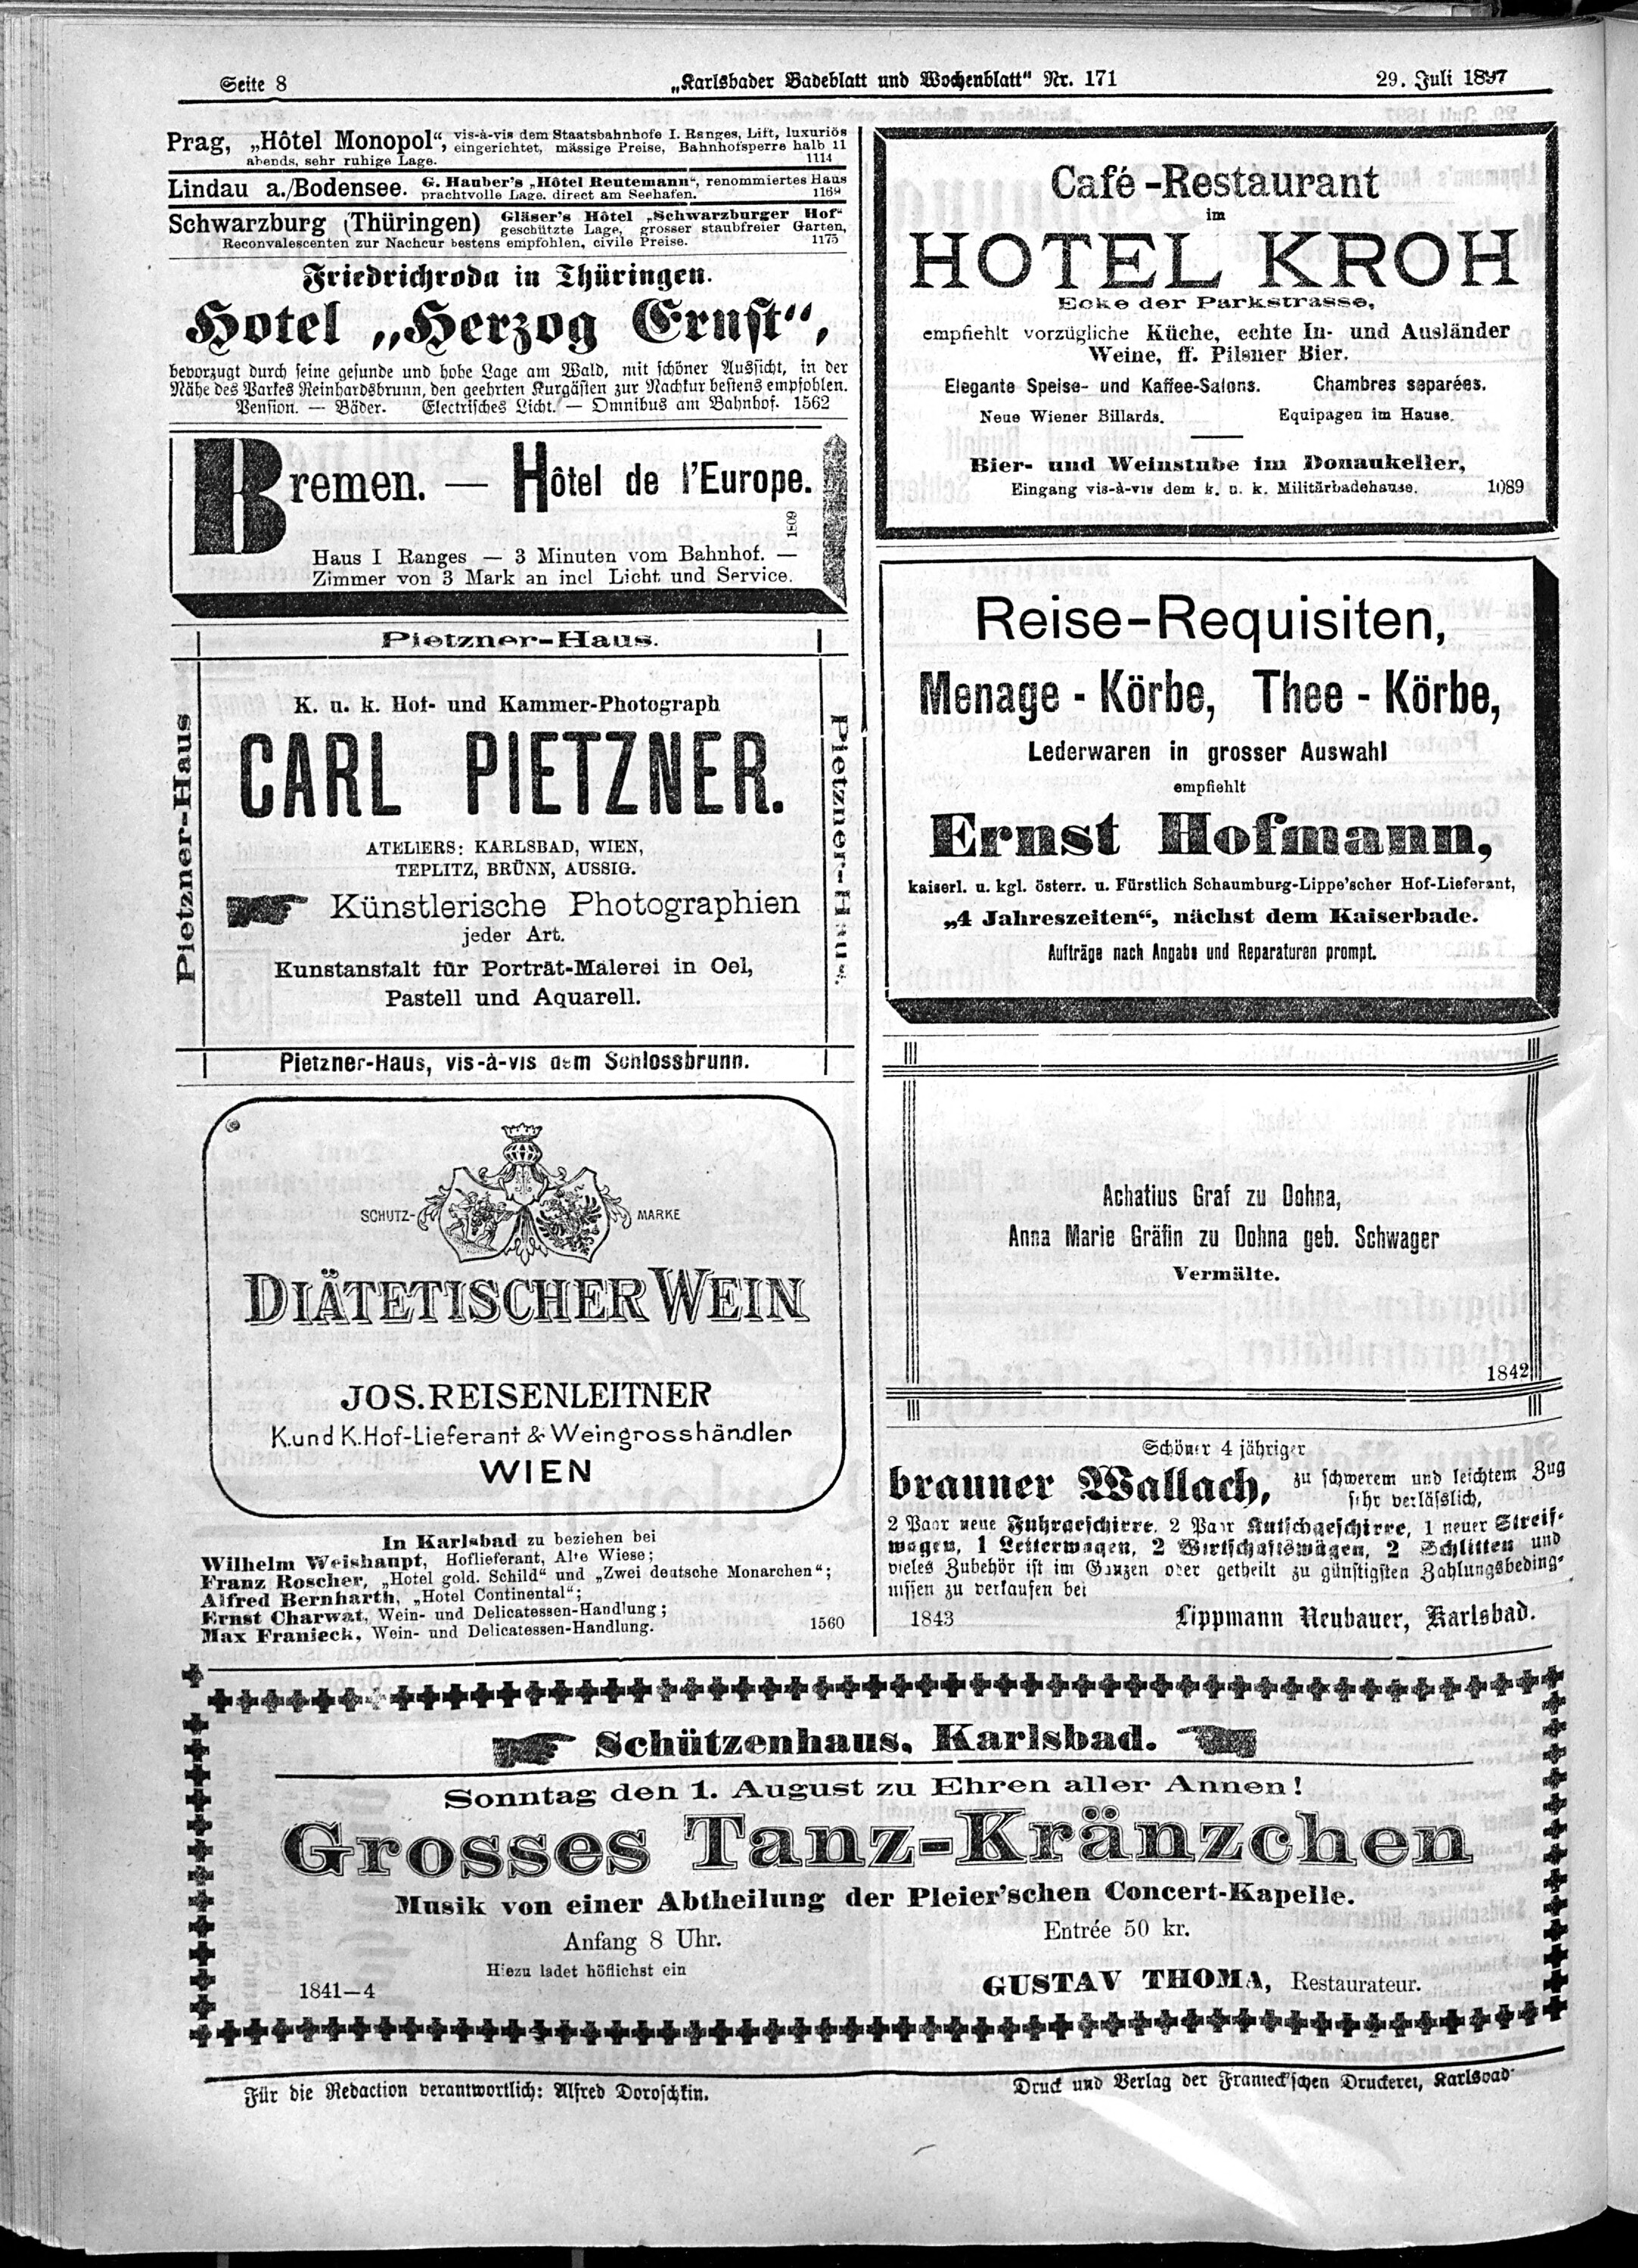 8. karlsbader-badeblatt-1897-07-29-n171_1460